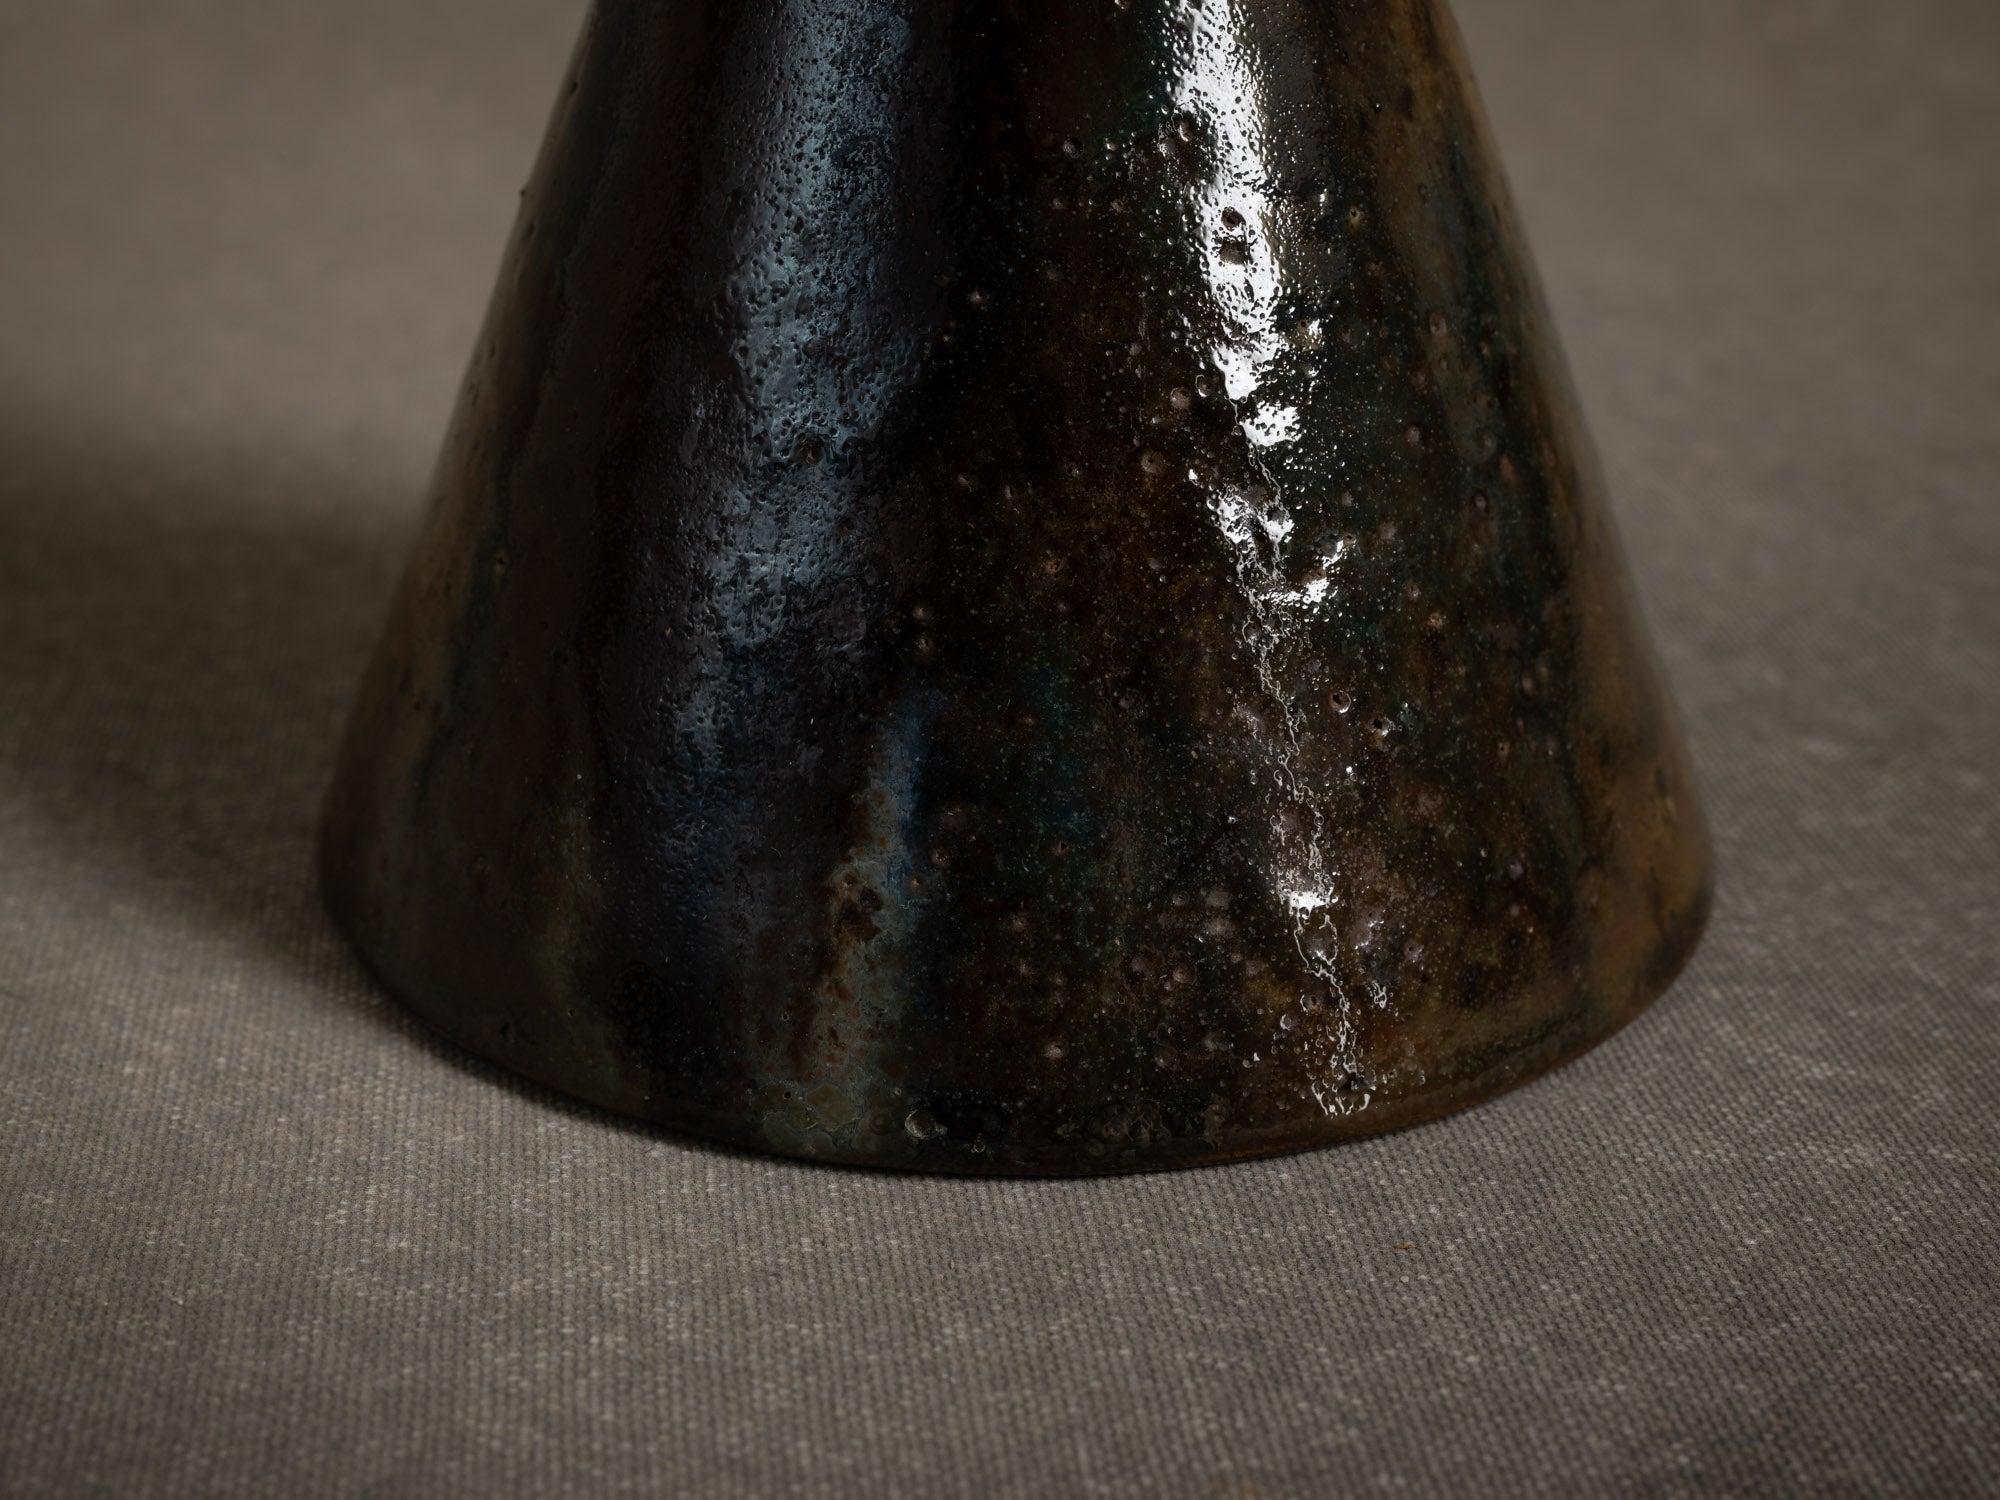 Vase japoniste en grès par la poterie du Mesnil de Bavent, France (Vers 1900-20)..Norman "Erlenmeyer" stoneware vase by la poterie du Mesnil de Bavent, France (circa 1900-20)